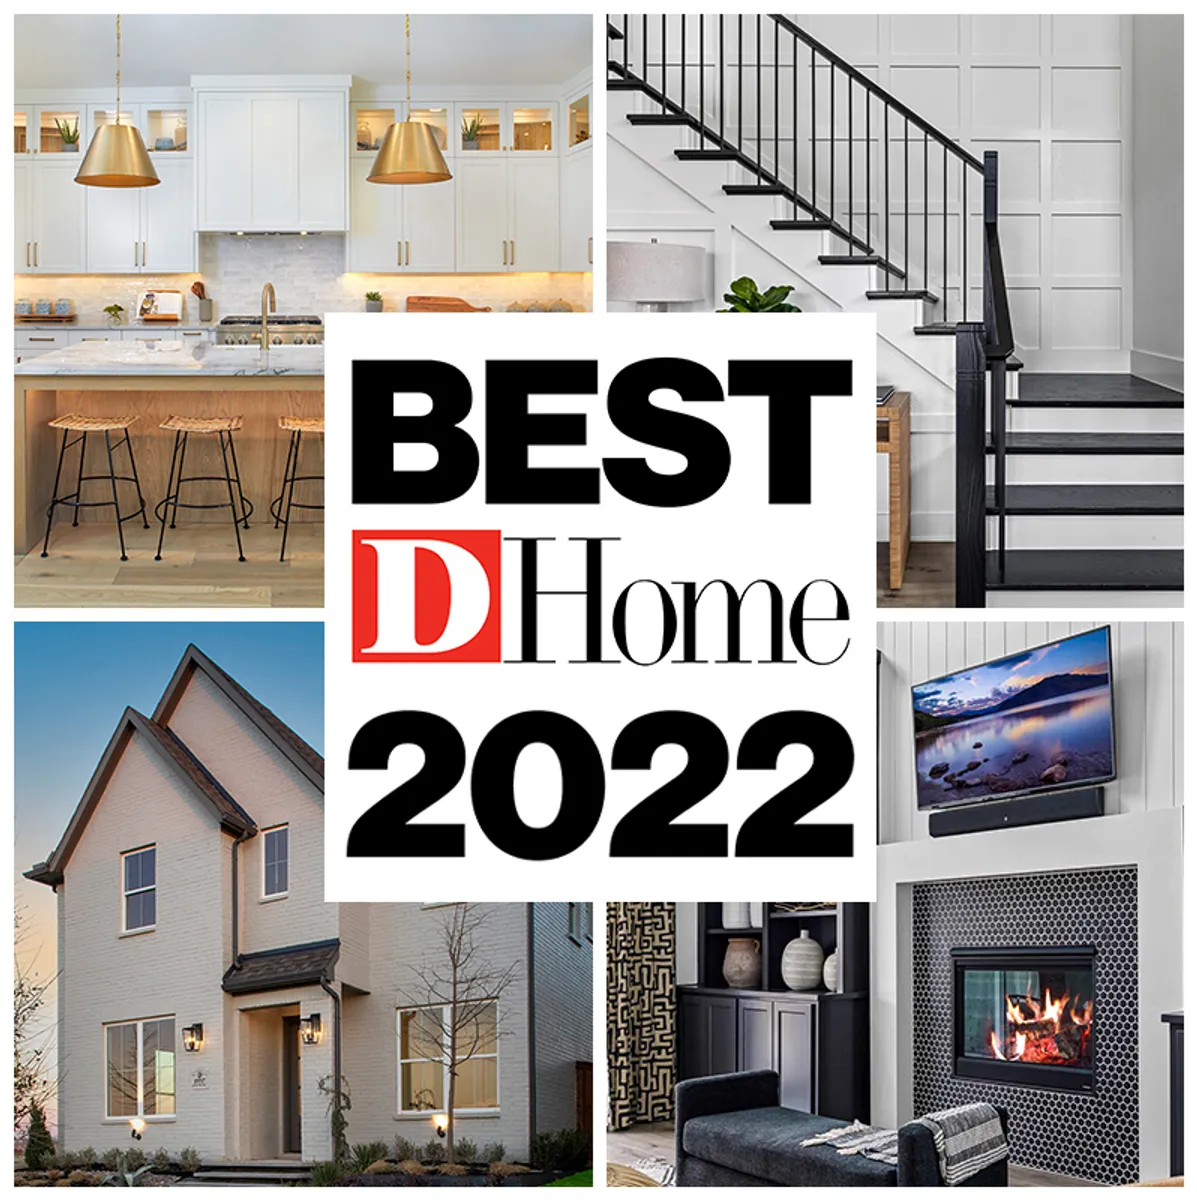 D Home's 2022 Best Builders!